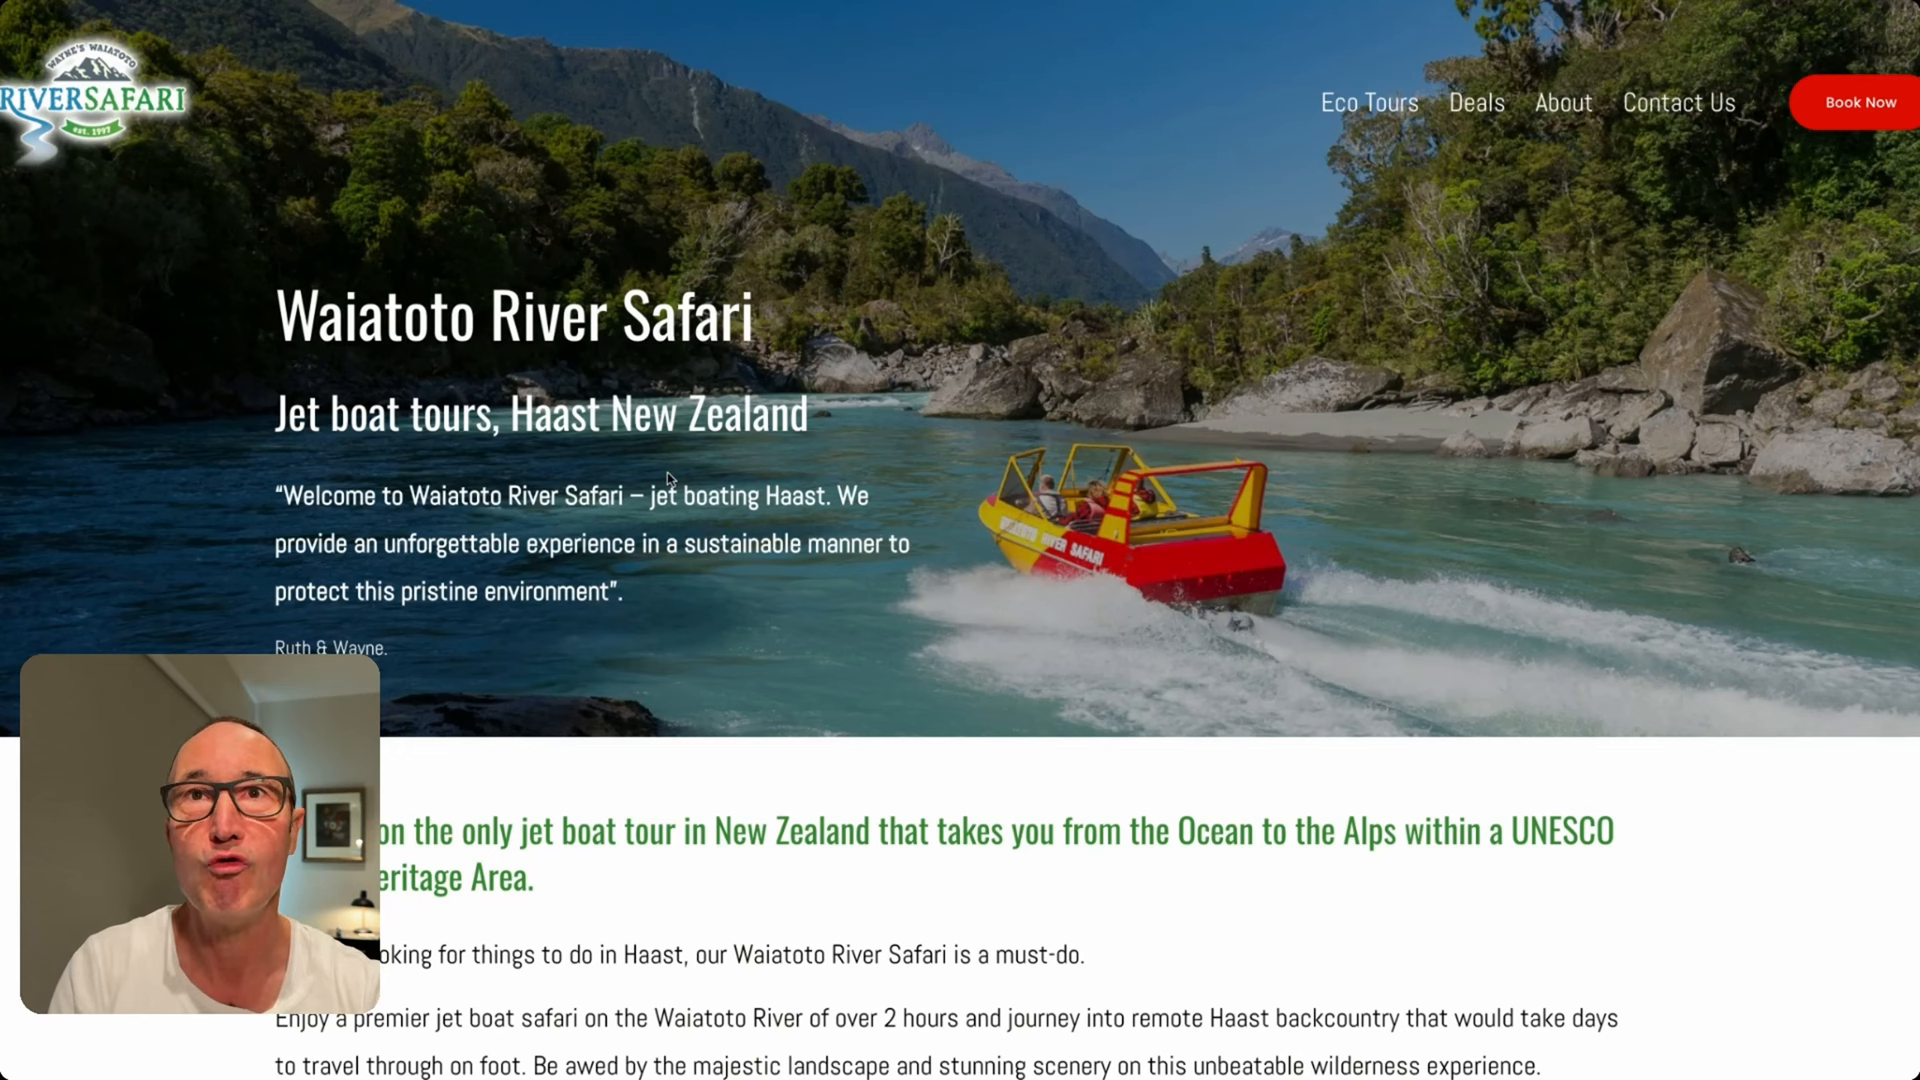 Waiatoto River Safari jetboating tour near Haast